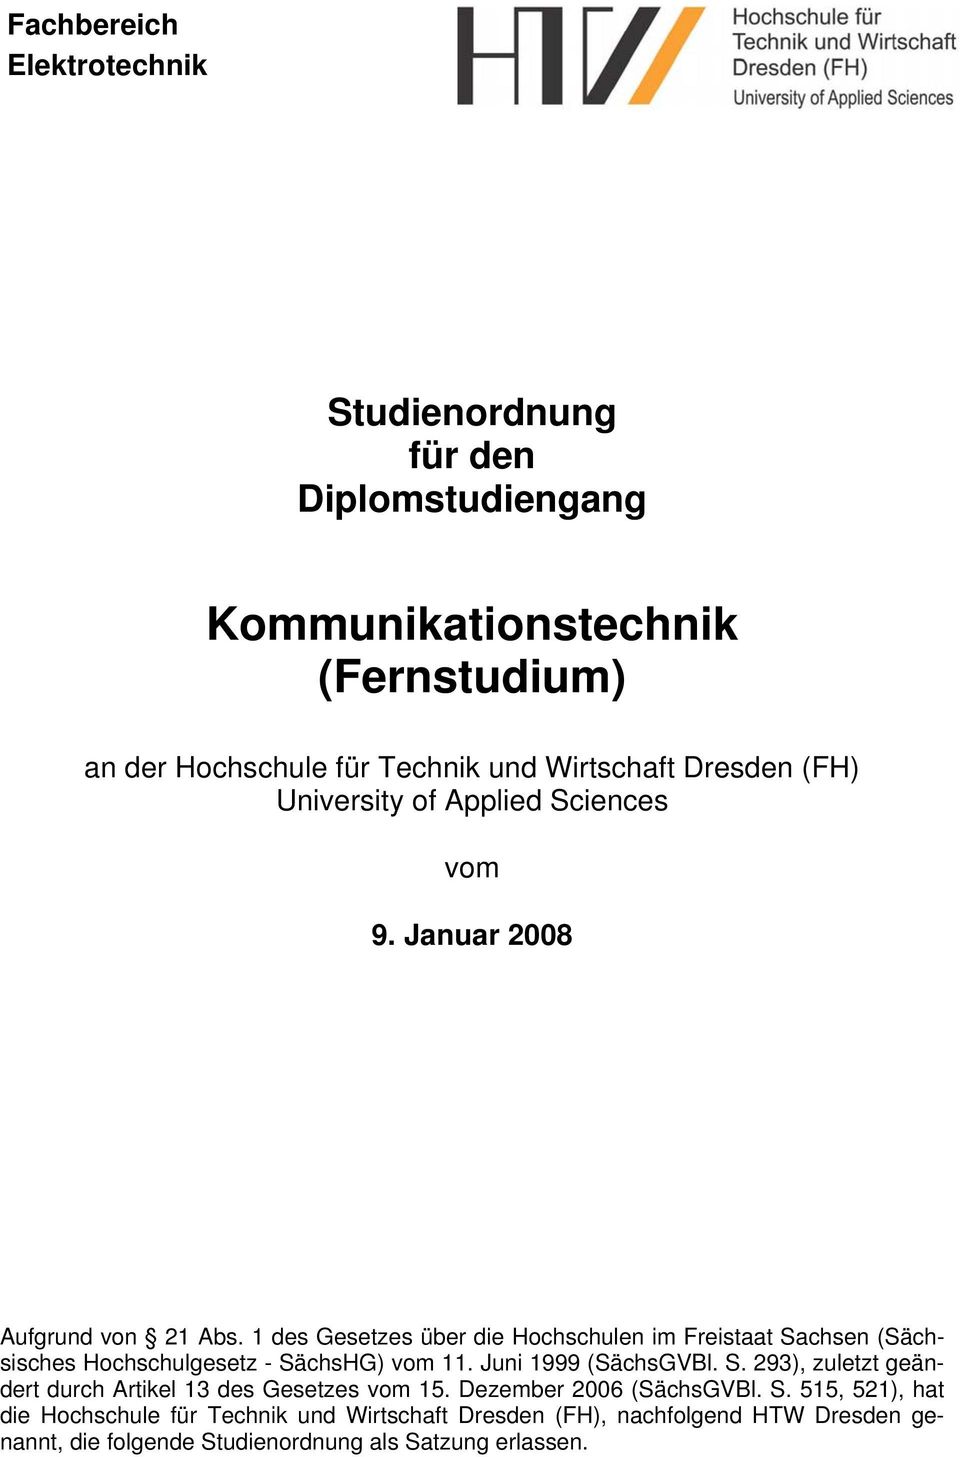 1 des Gesetzes über die Hochschulen im Freistaat Sachsen (Sächsisches Hochschulgesetz - SächsHG) vom 11. Juni 1999 (SächsGVBl. S. 293), zuletzt geändert durch Artikel 13 des Gesetzes vom 15.